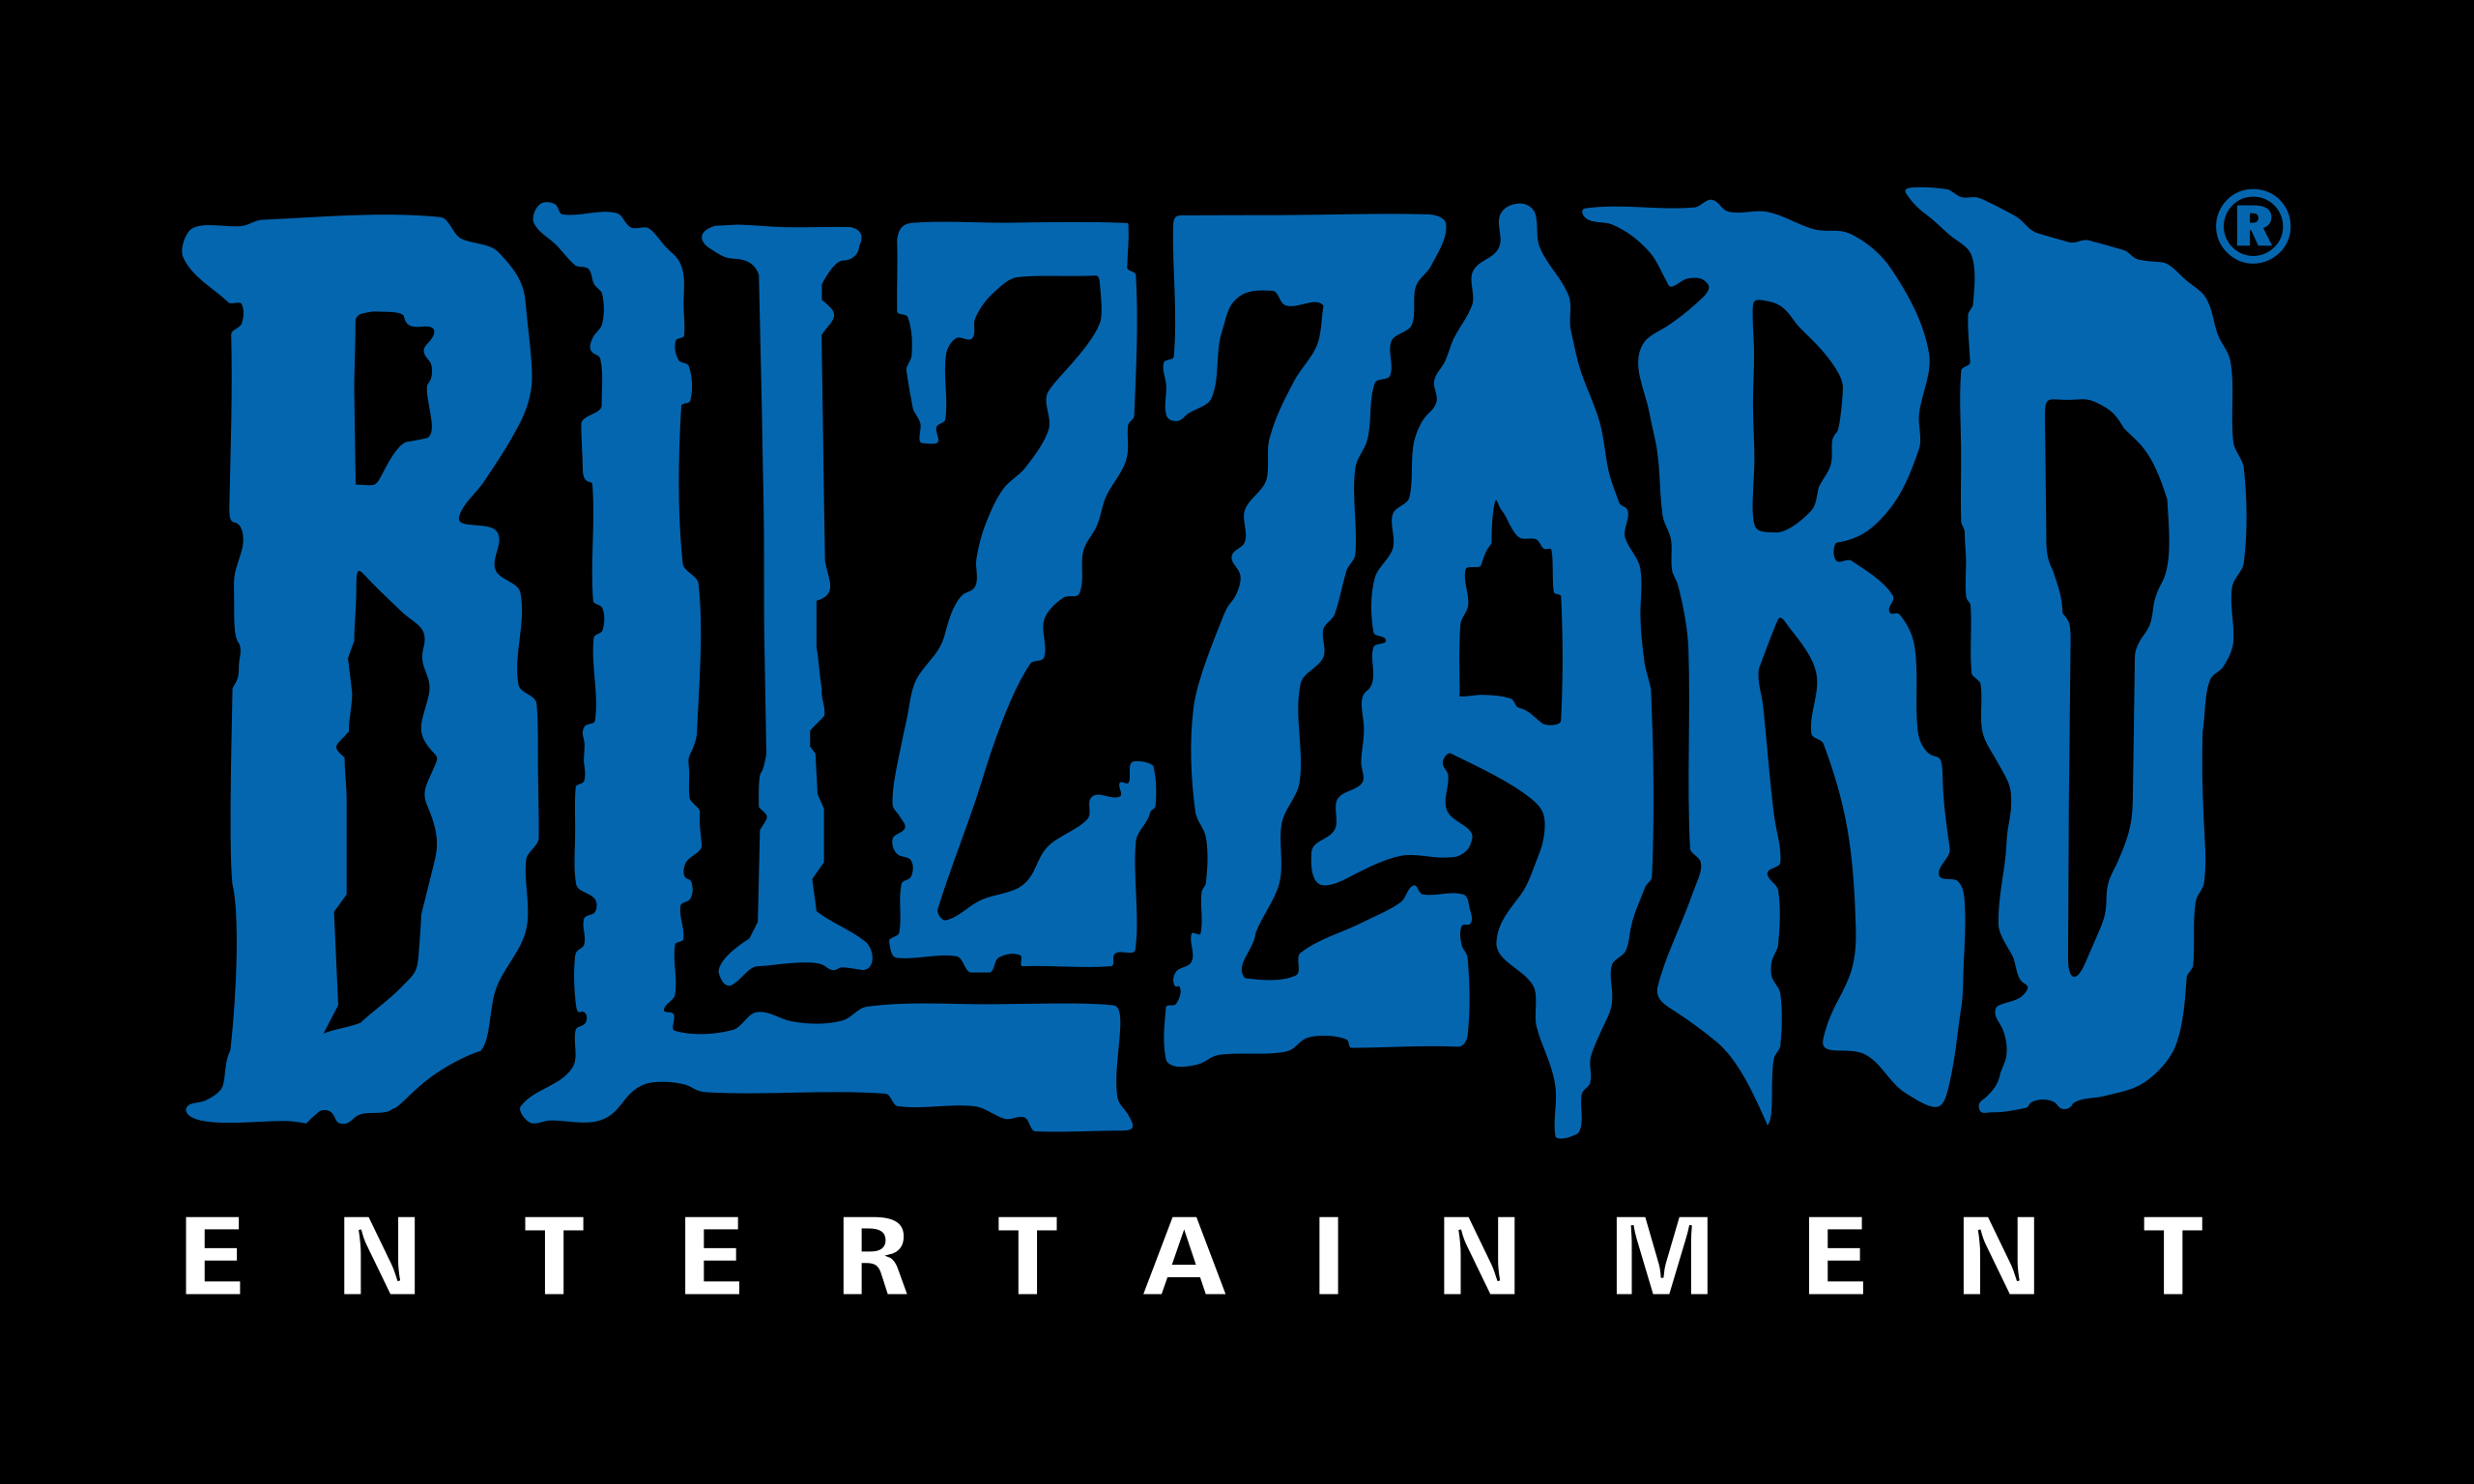 Blizzard zal niet langer personages naar echte mensen vernoemen!